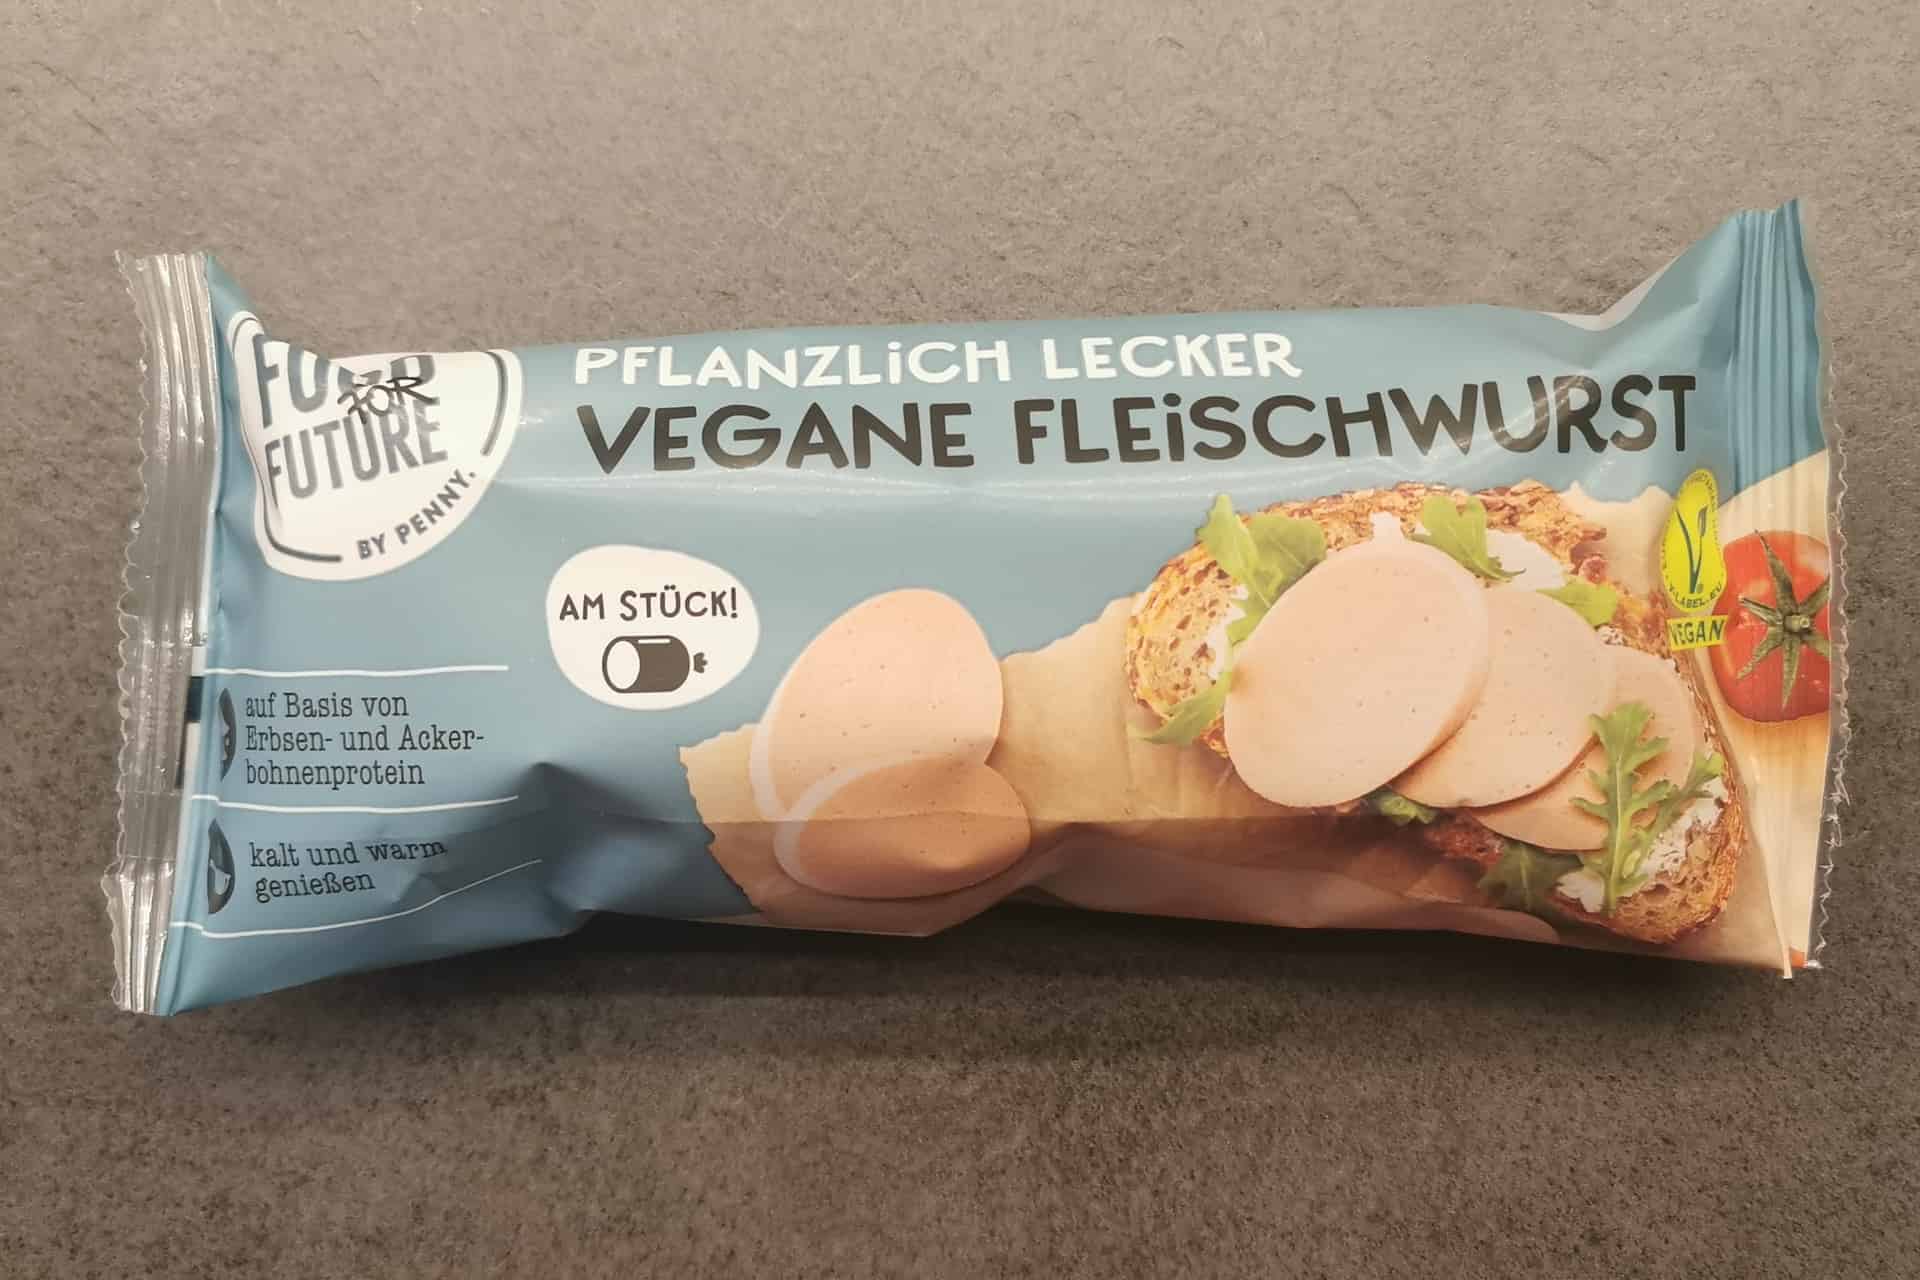 Food for Future: Vegane Fleischwurst - Fleischersatz Produkte